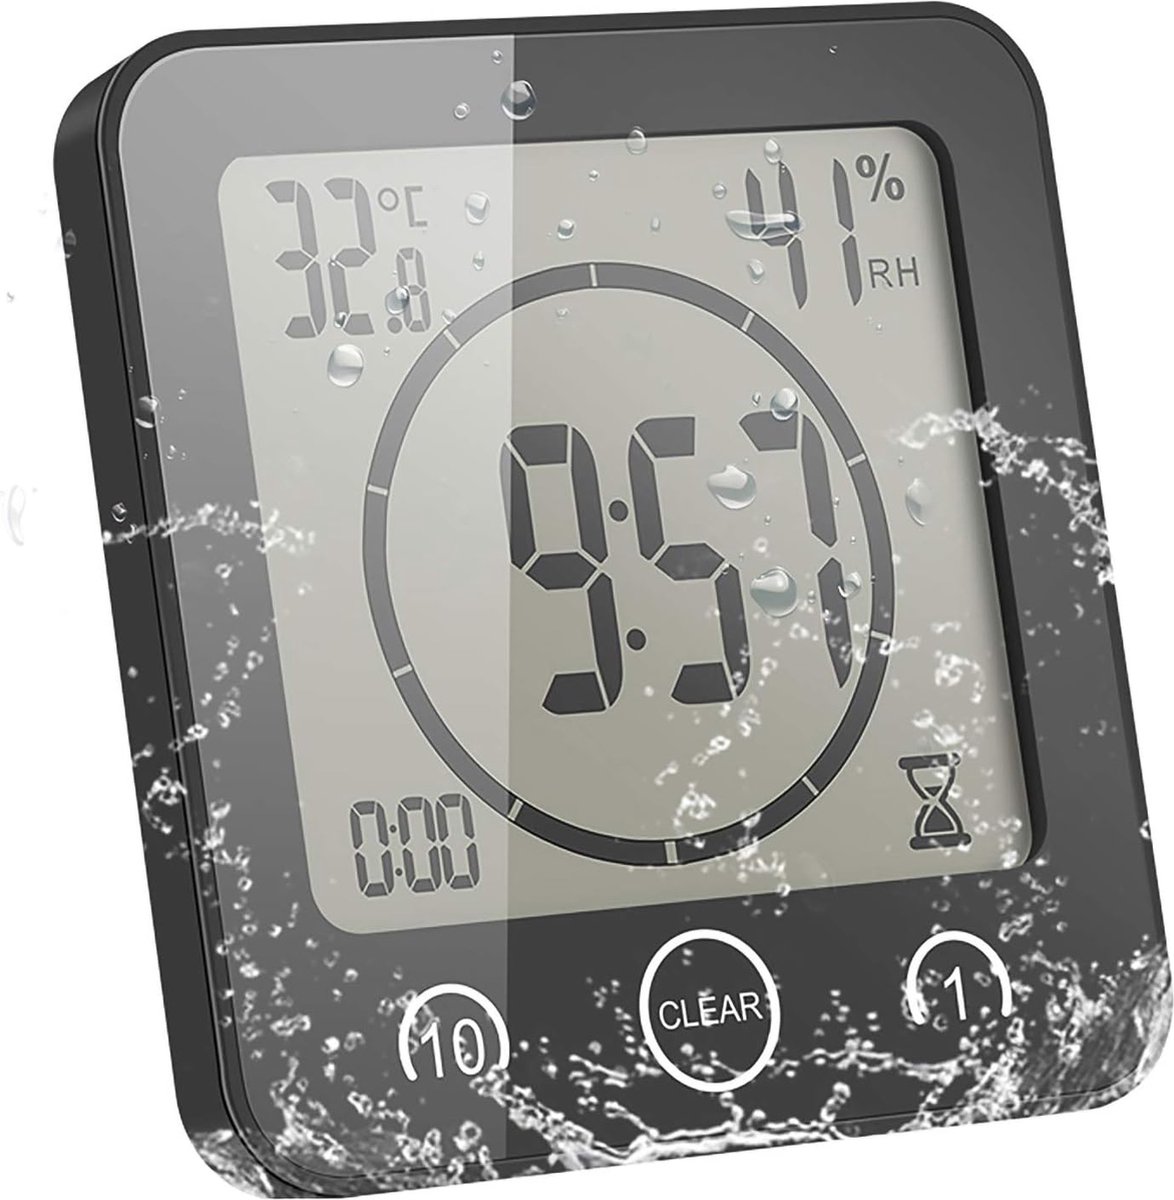 Waterdichte Douche Timer met Temperatuur- en Luchtvochtigheidsweergave - Badkamer Countdown Klok - Energiebesparend - Intuïtieve Bediening - Efficiënt Waterverbruik - Duurzaam Ontwerp - Veilig en Waterbestendig - Handige Installatie